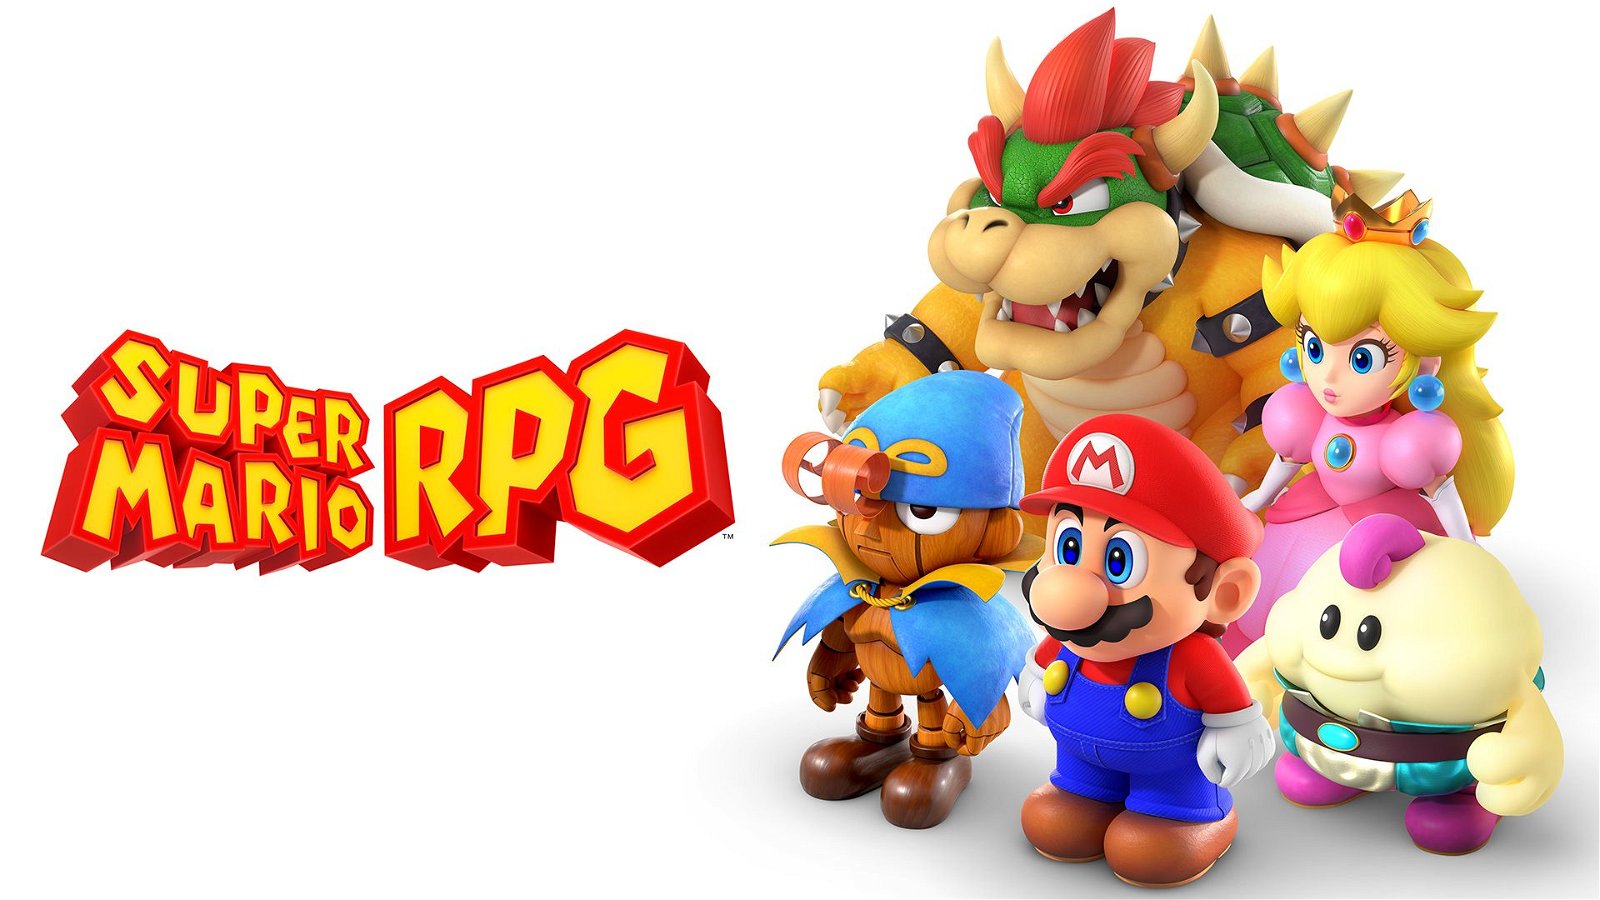 Image of Super Mario RPG